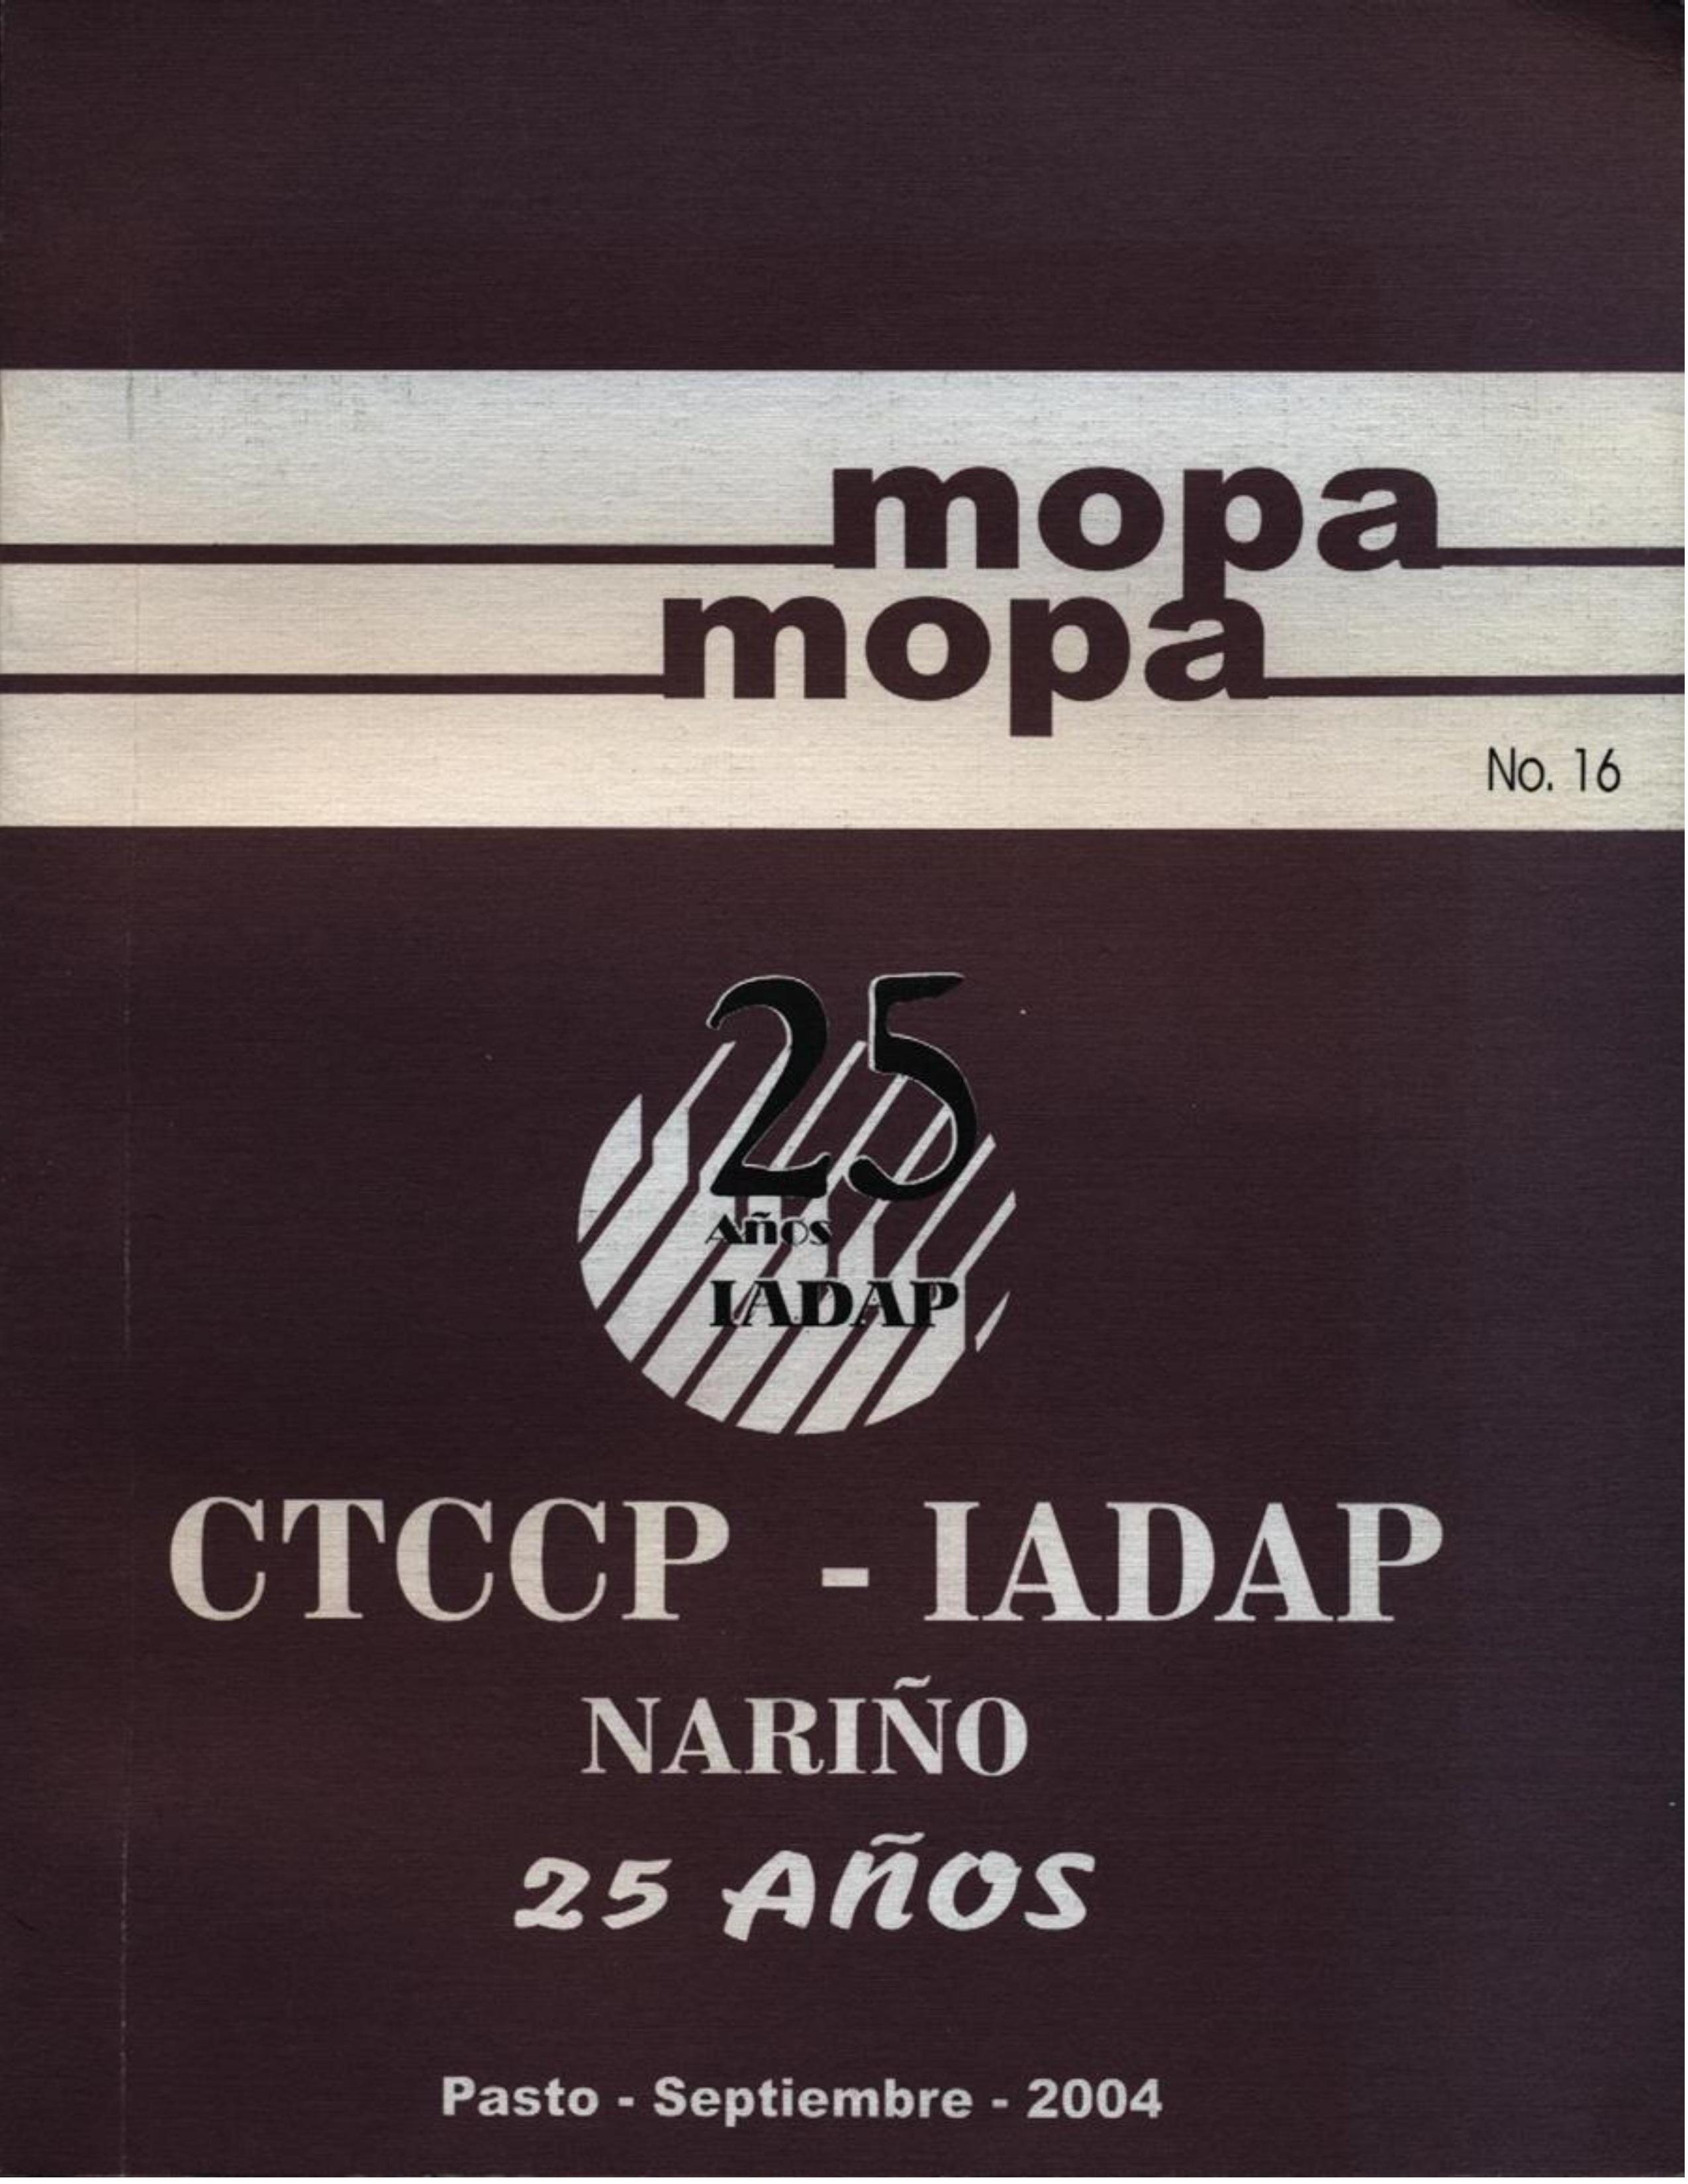 					Ver Vol. 1 Núm. 16 (16): Revista Mopa Mopa 16
				